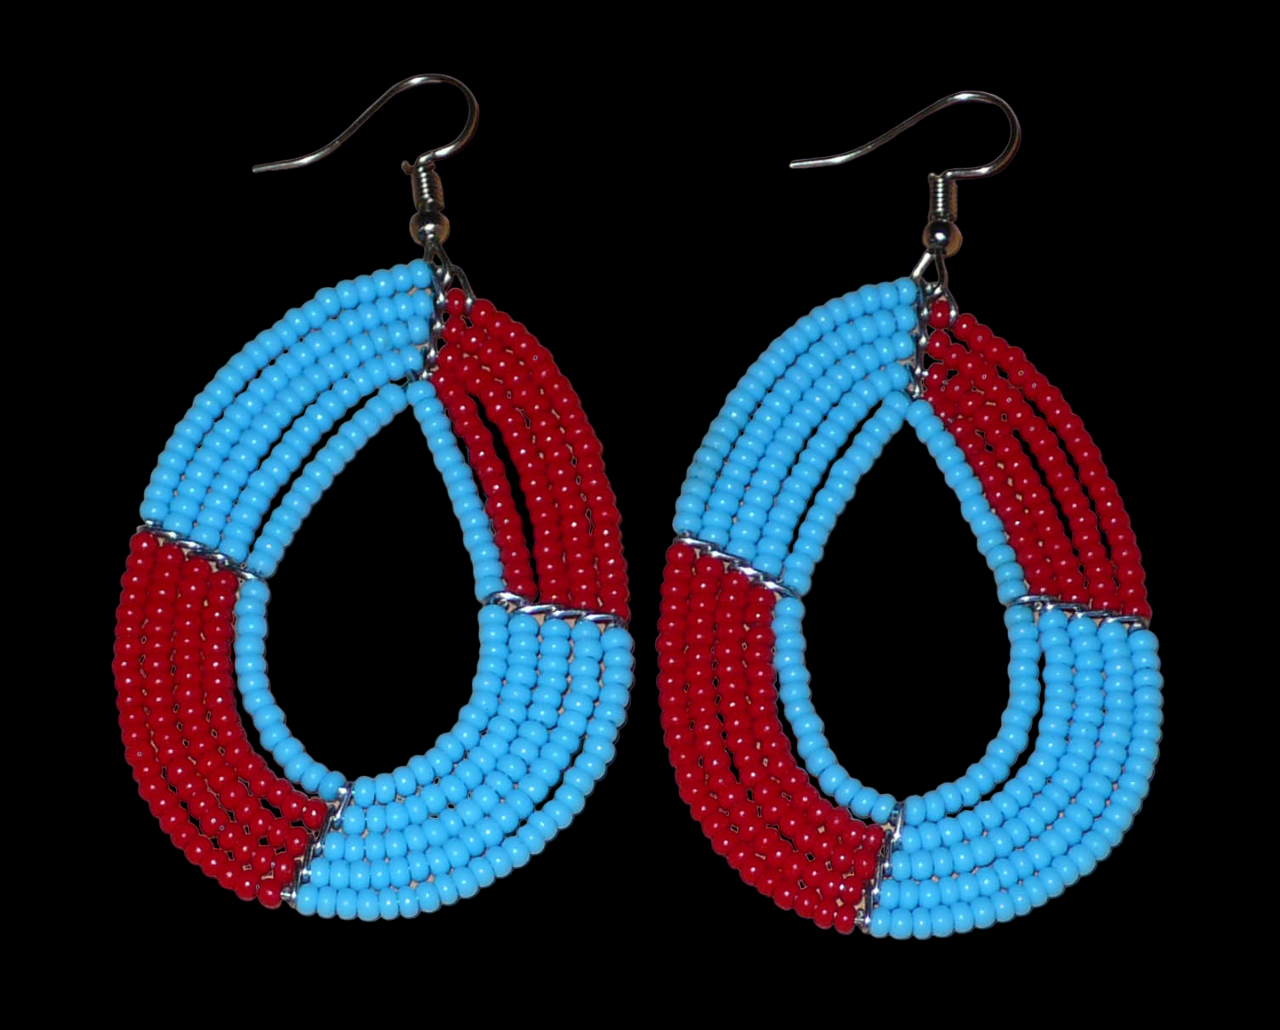 Boucles d'oreilles bicolores évoquant les années 60, composées de perles de rocaille rouges et bleues glissées sur cinq rangées de fils de fer montés en forme de gouttes. Elles mesurent 7,5 cm de long et 4 cm de large et se portent avec des crochets en acier inoxydable. 